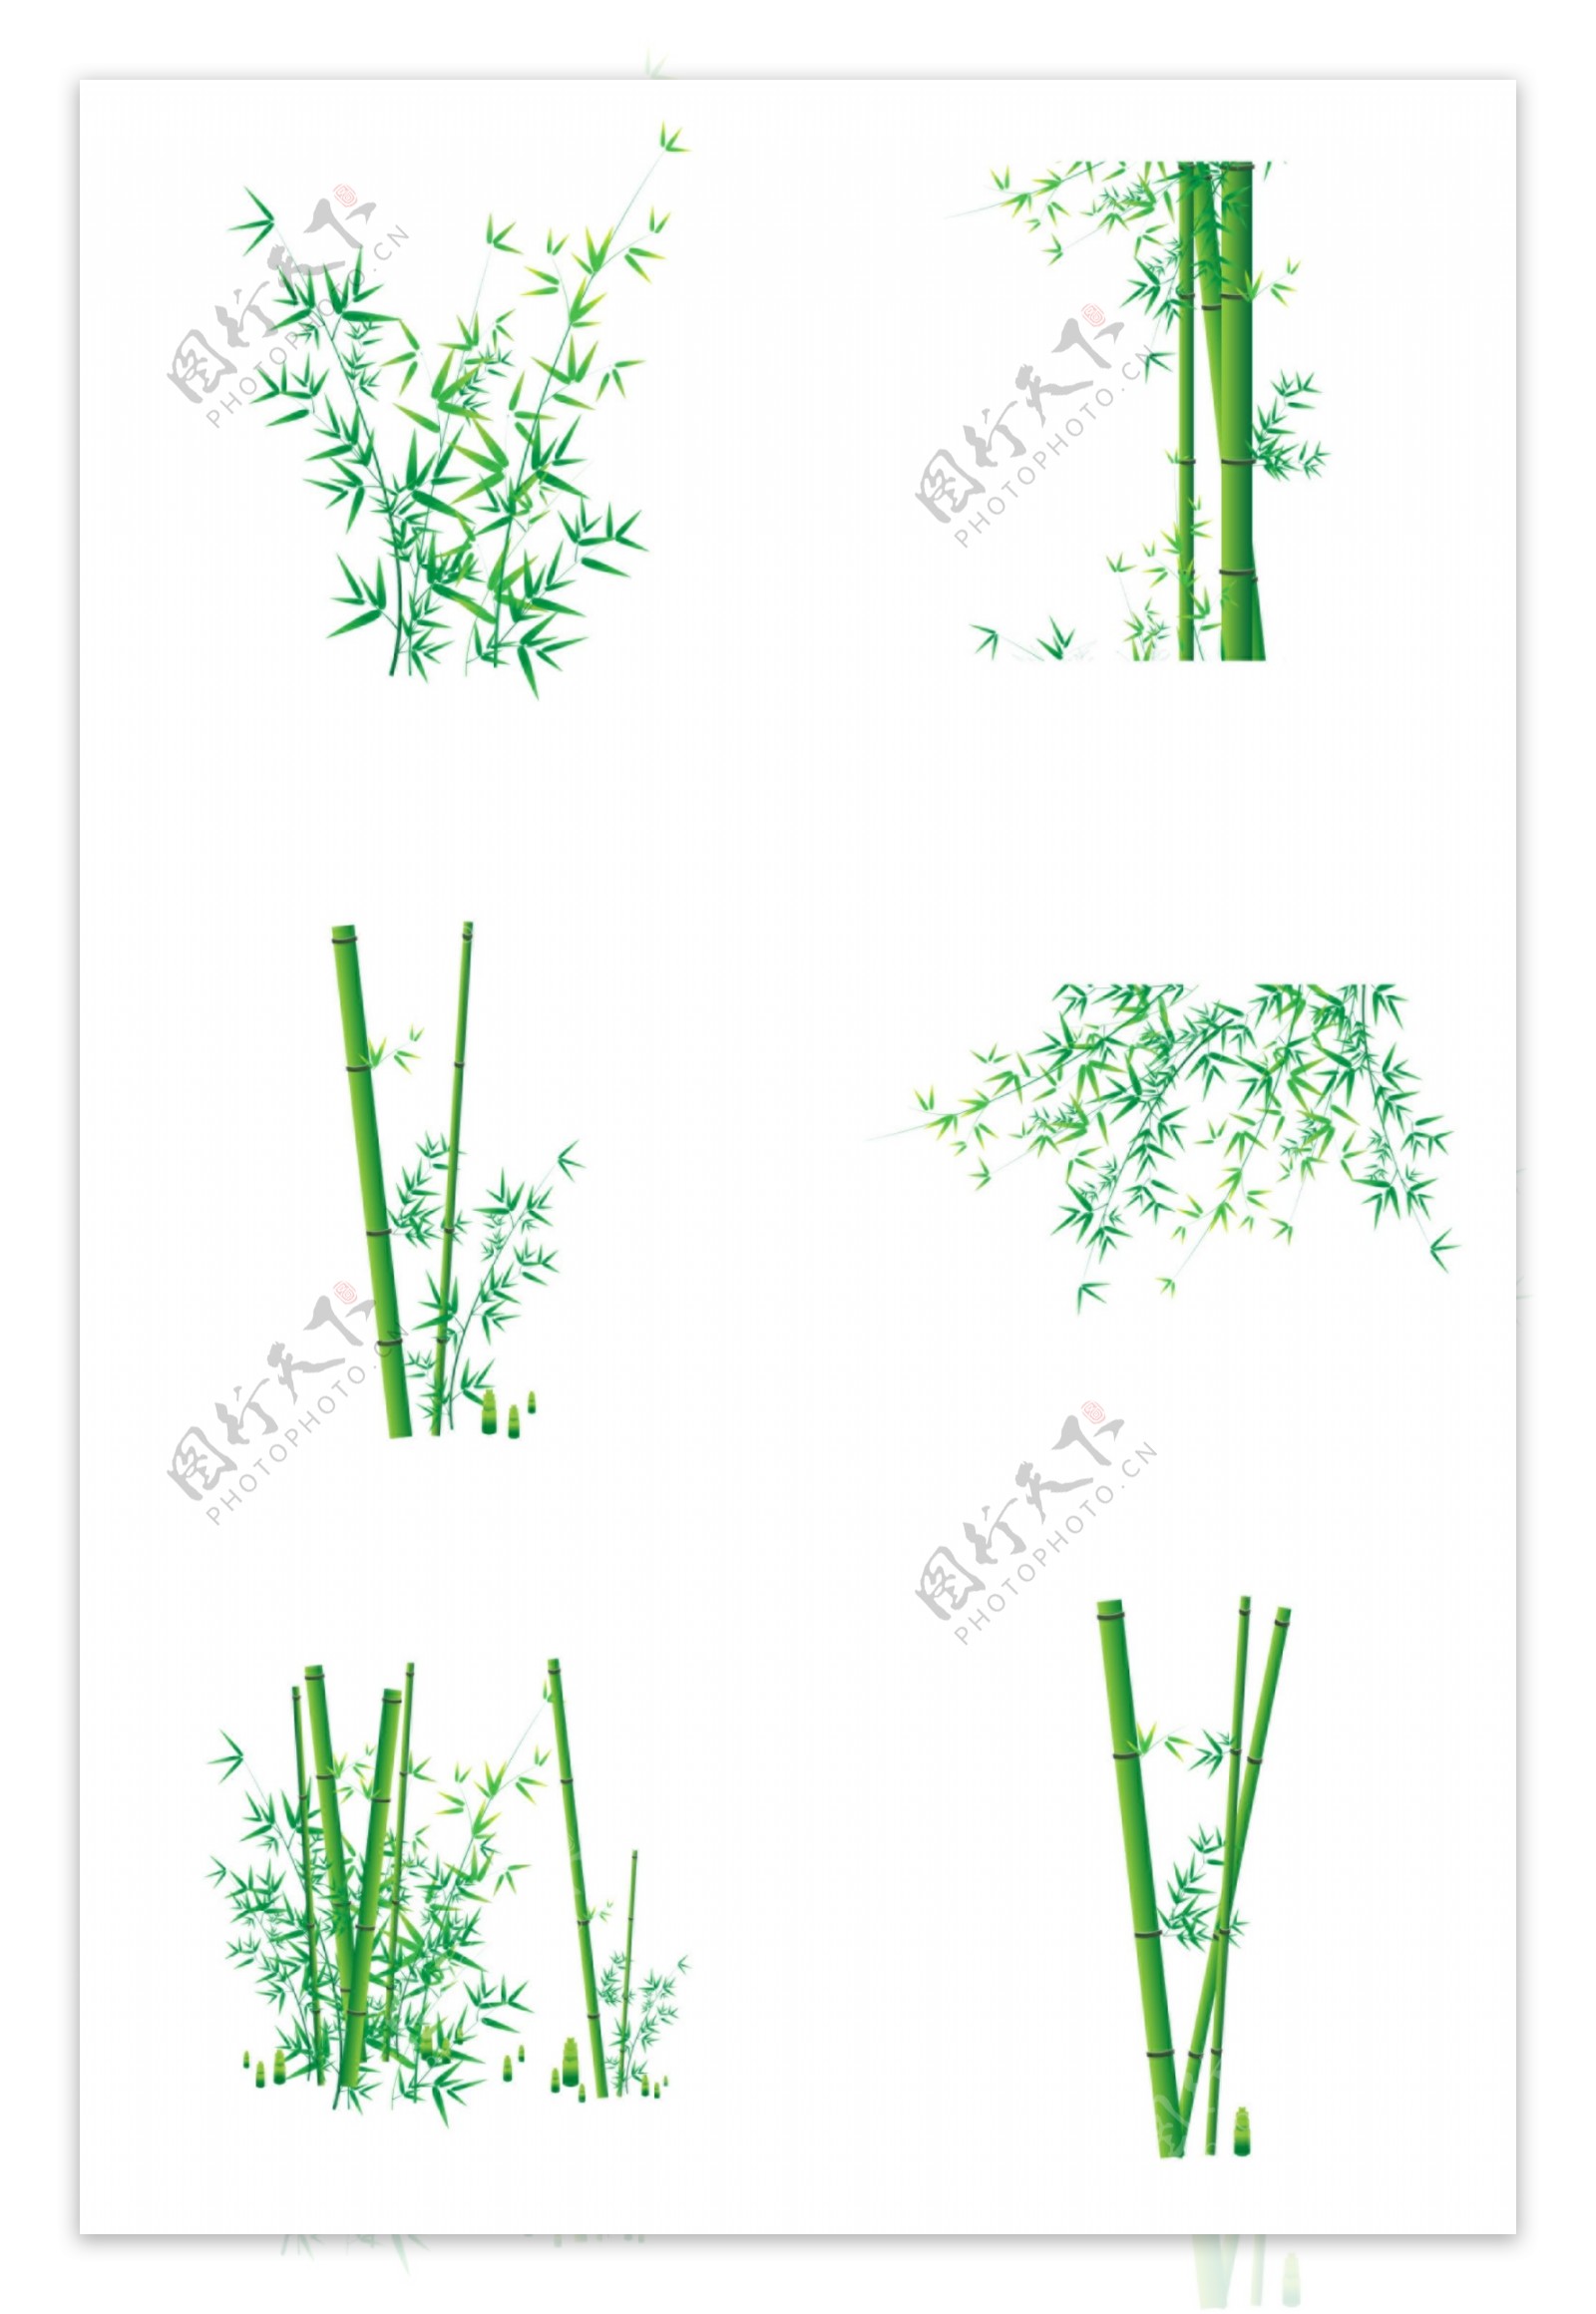 绿色竹子图片